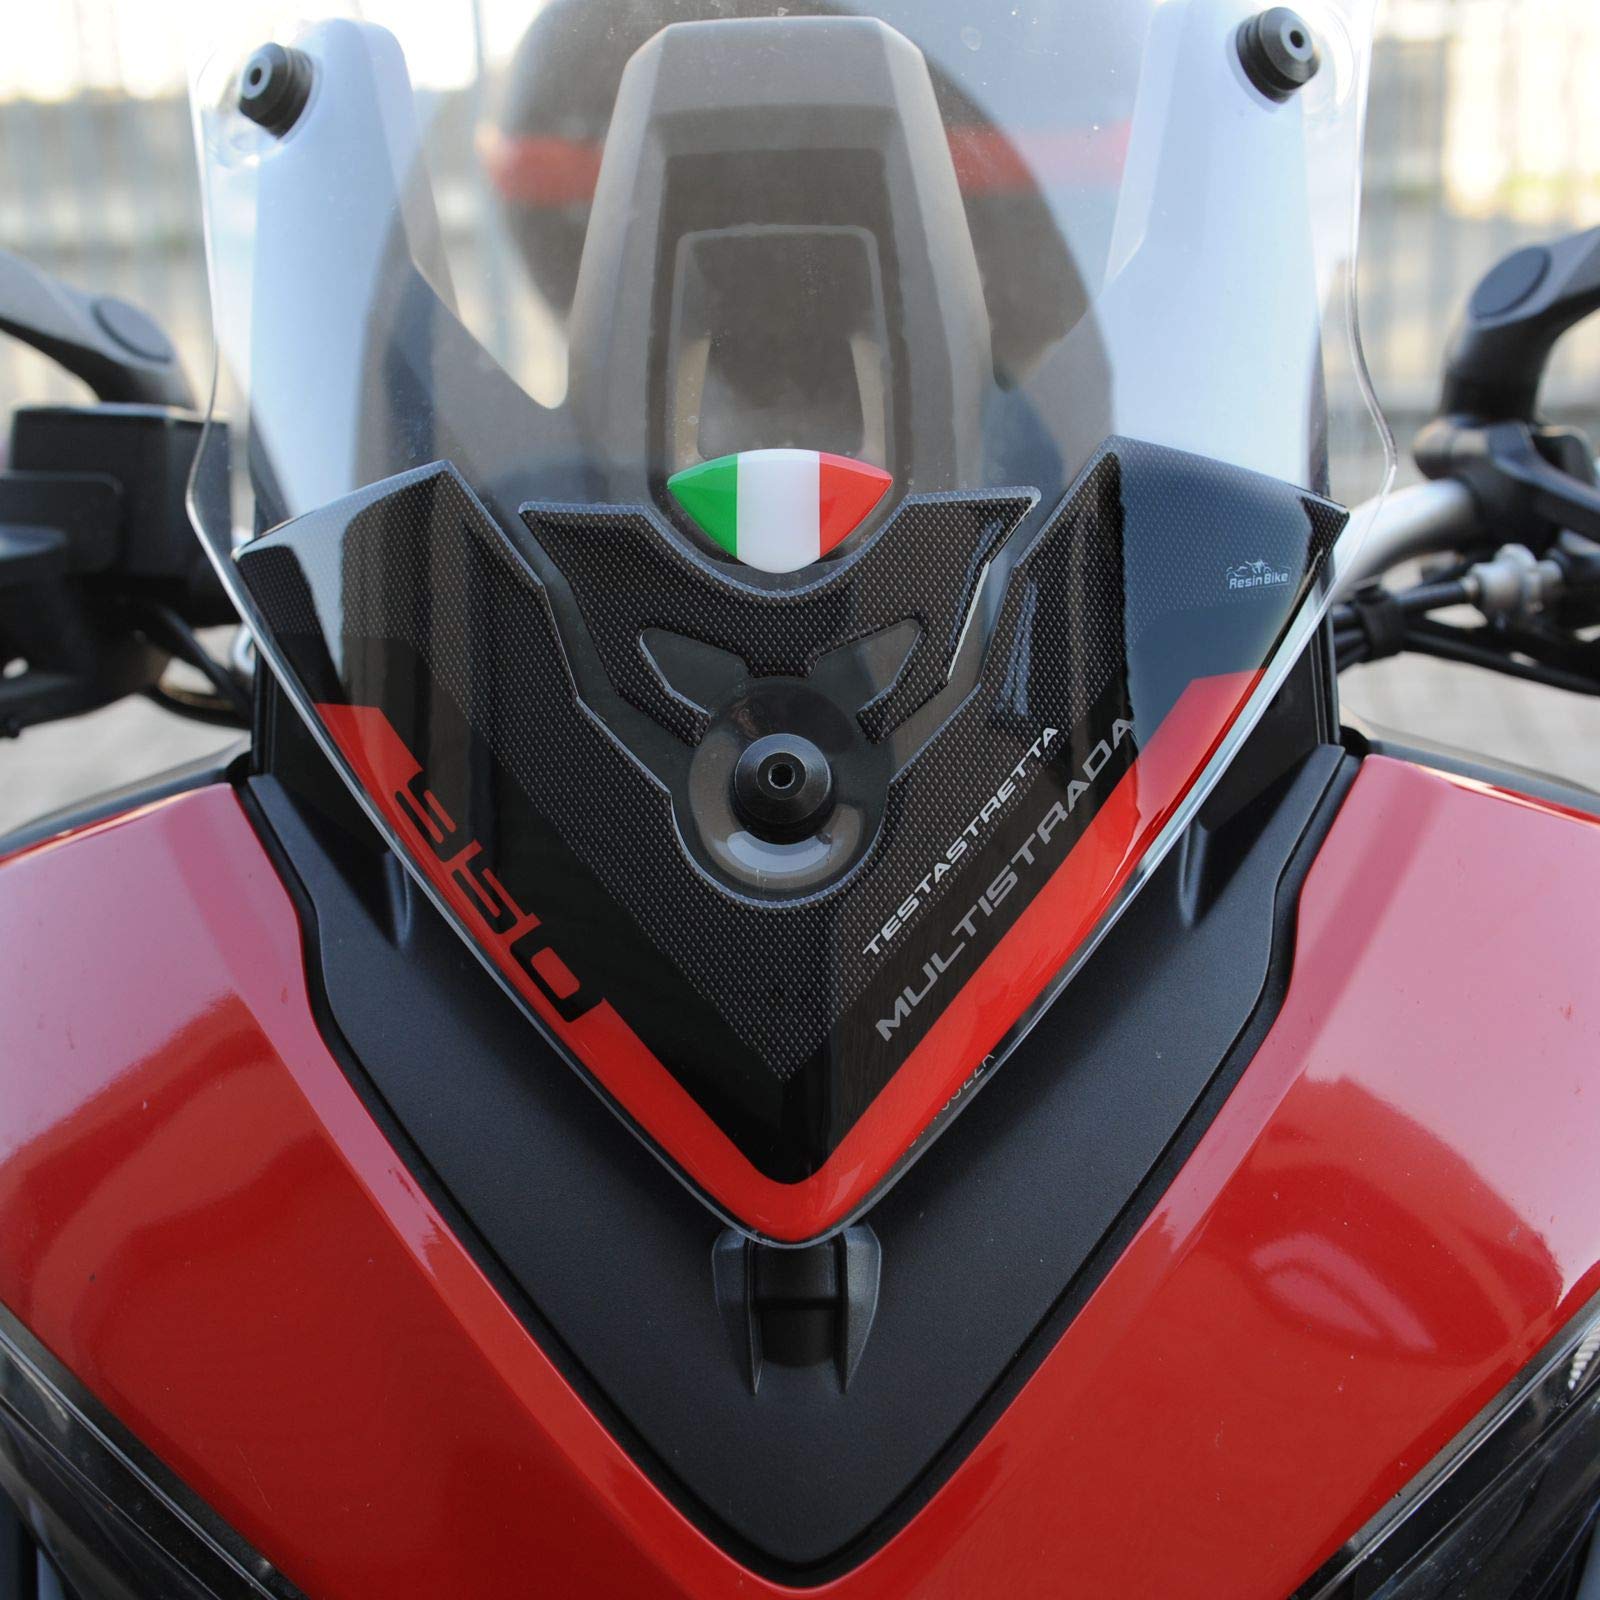 Resin Bike Aufkleber für Motorrad Kompatibel mit Ducati Multistrada 950 2018-2020. Windschildschutz vor Stößen und Kratzern. 3D-Harzklebstoff - Stickers - Made in Italy von Resin Bike